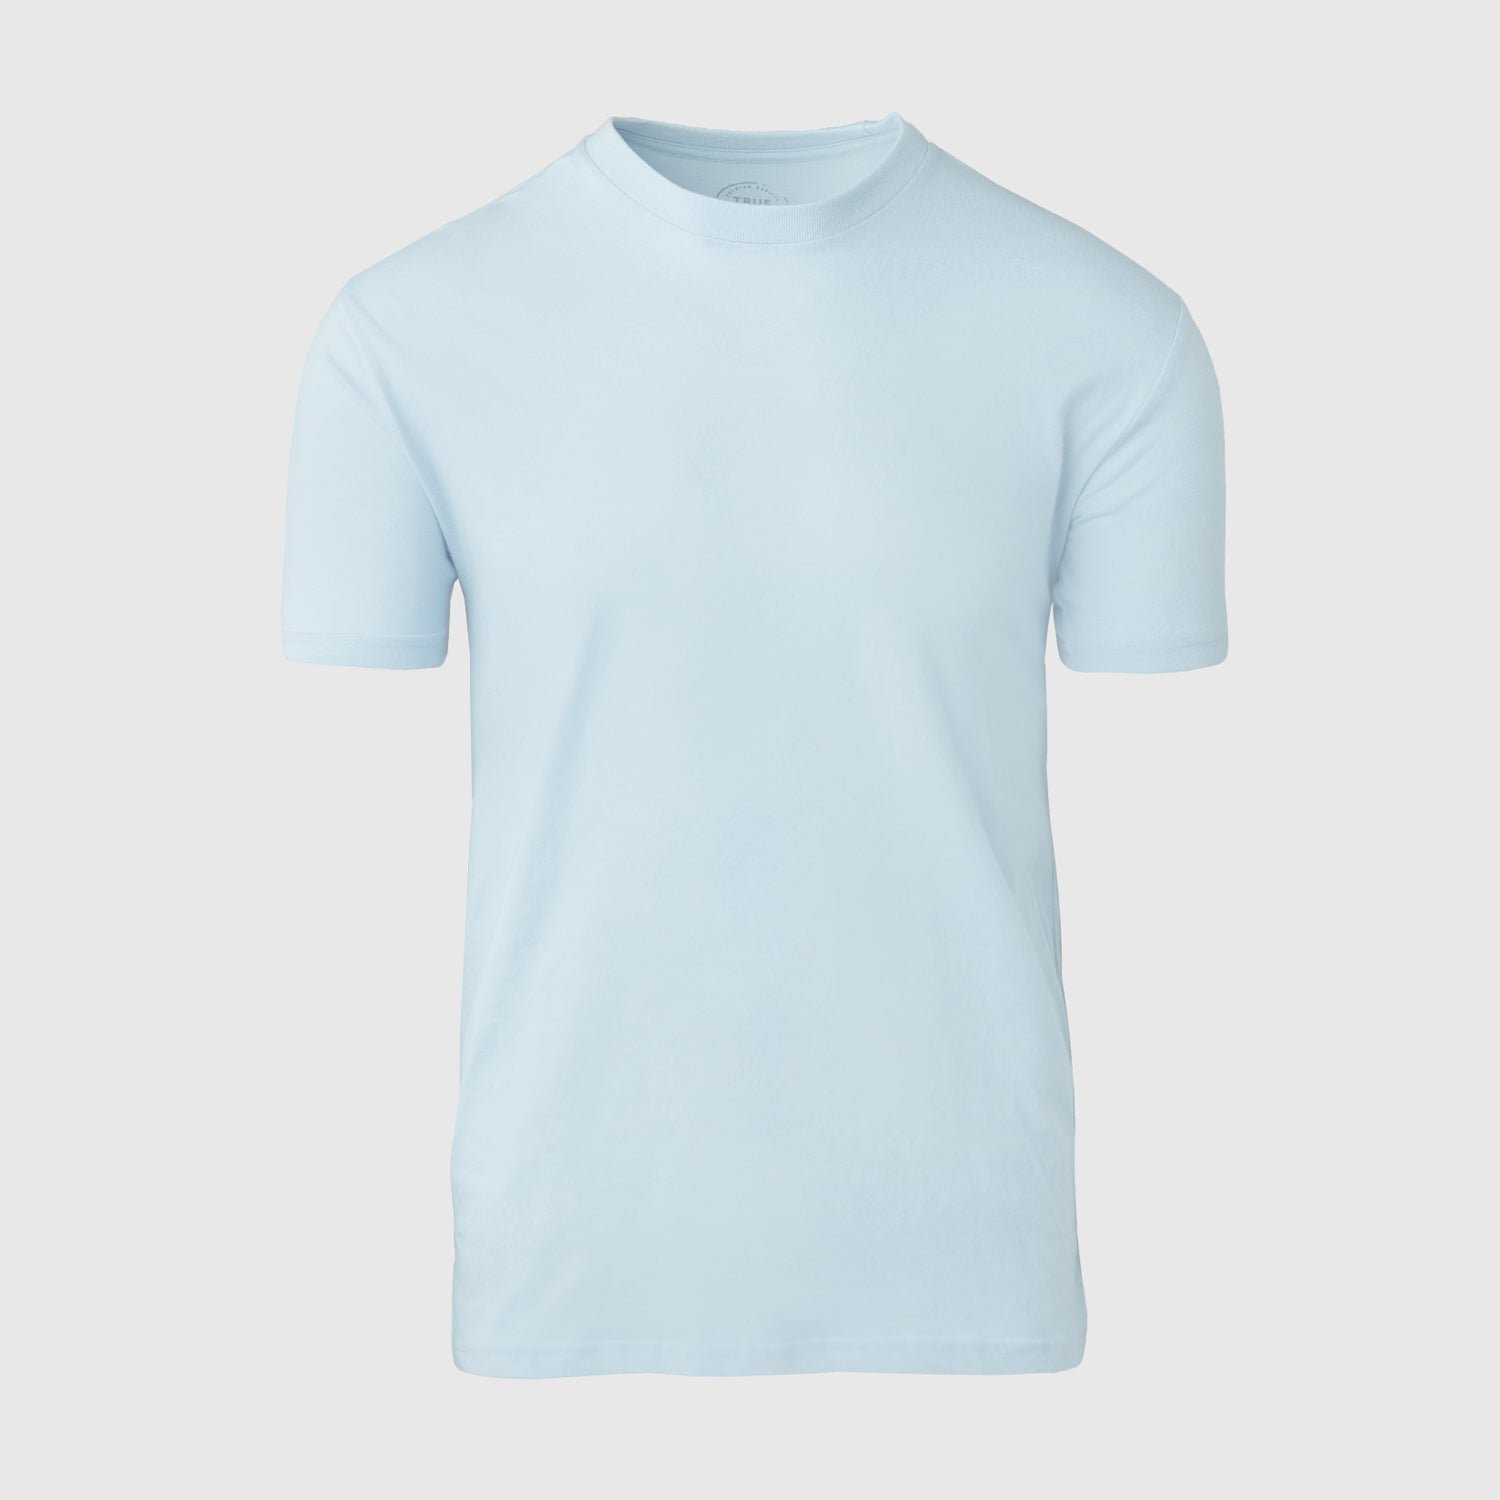 Pale Blue Crew Neck T-Shirt